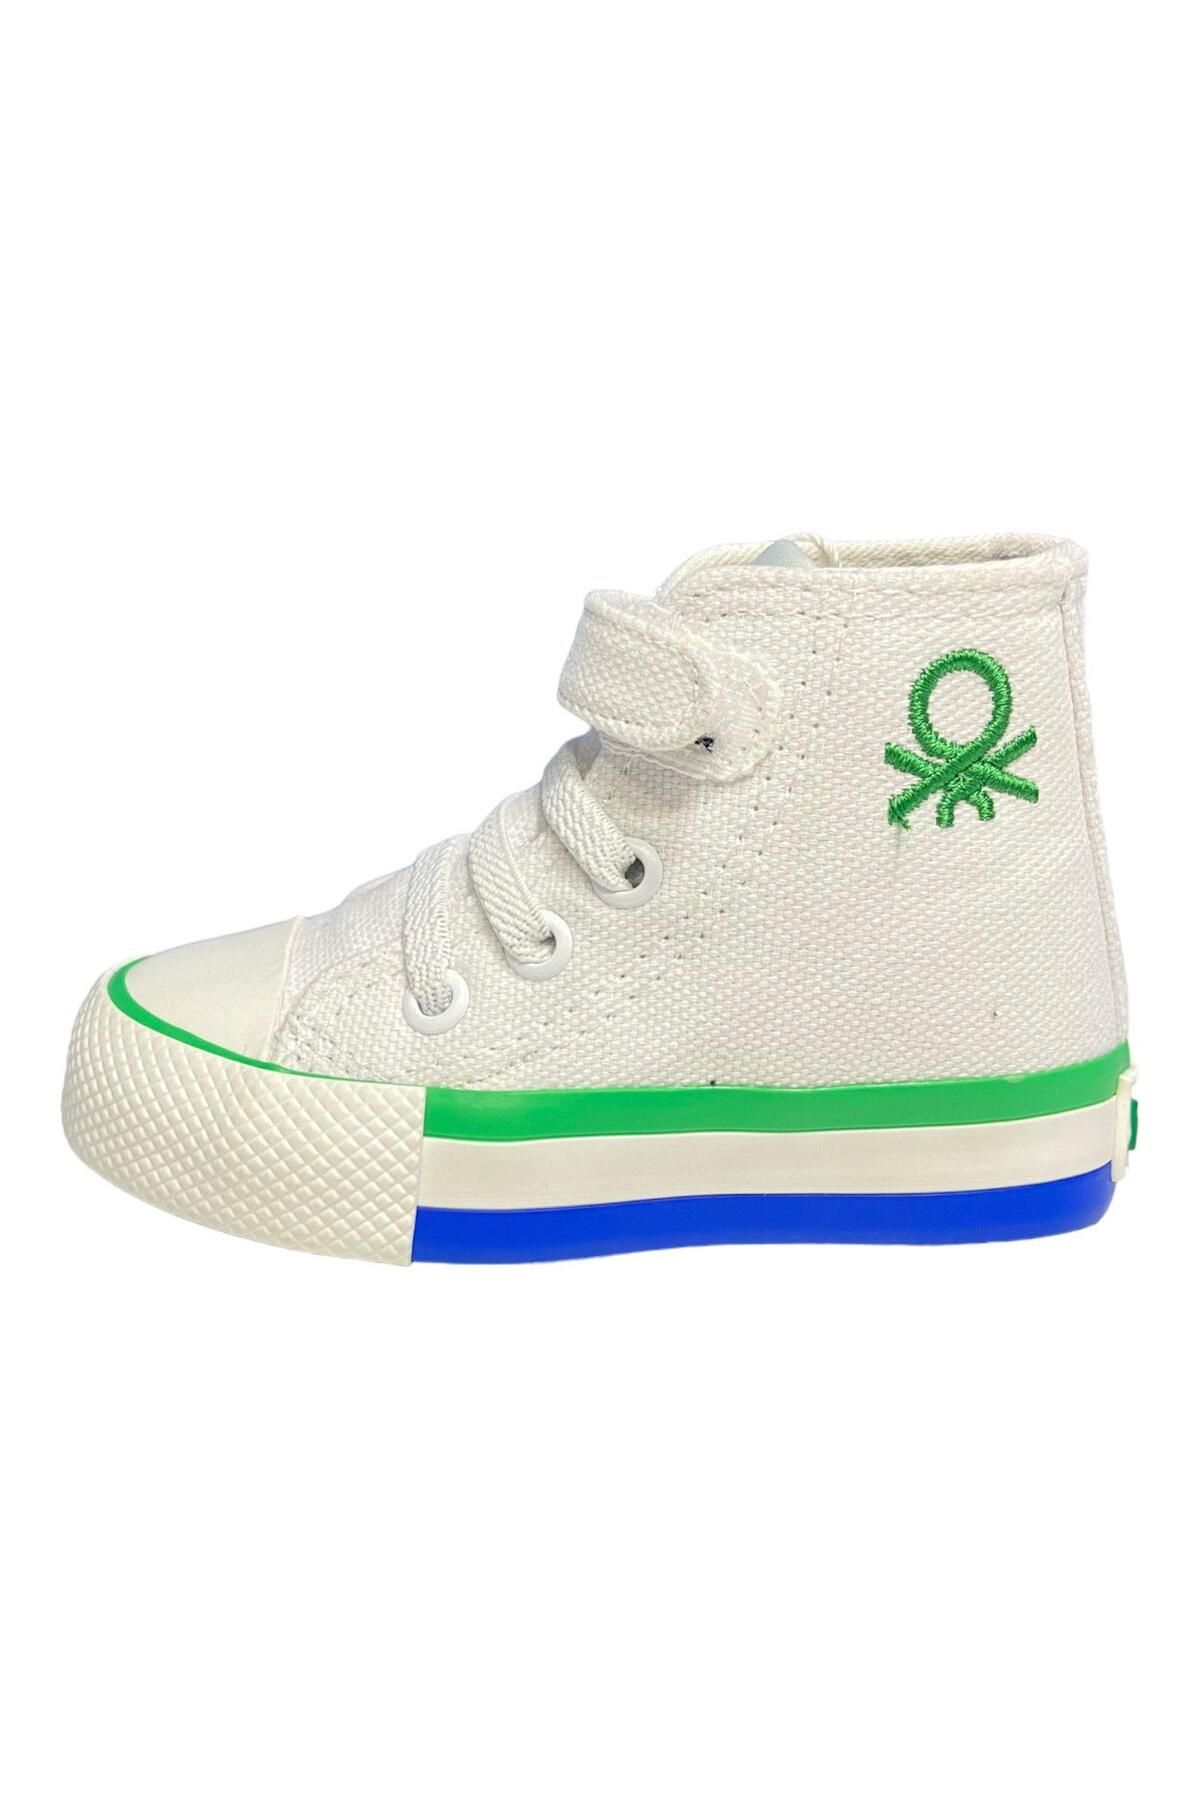 Benetton Bebe Beyaz Yeşil Çocuk Spor Ayakkabı